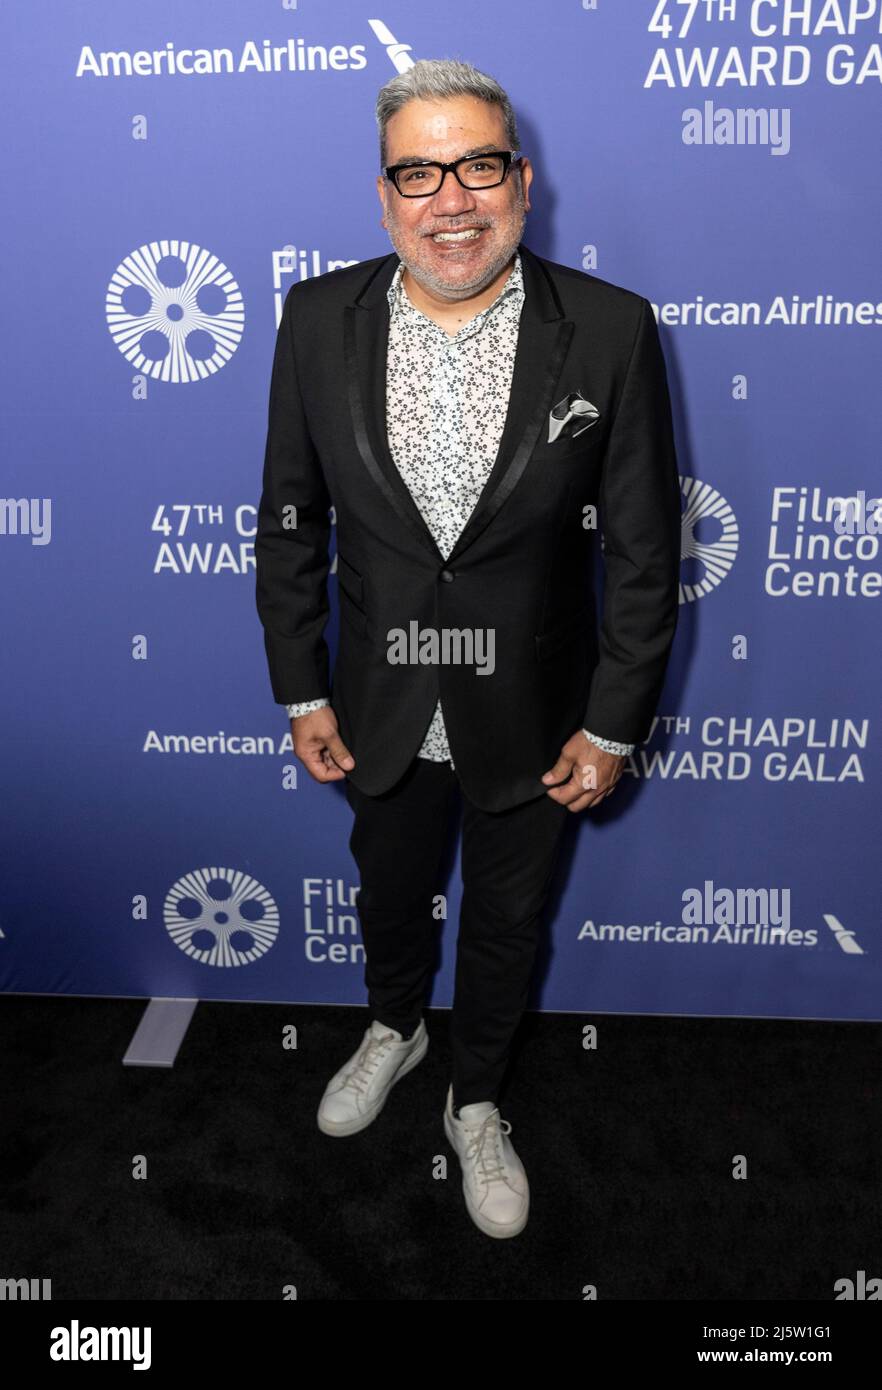 New York, NY - April 25, 2022: Eugene Hernandez attends 47th Chaplin Award Gala at Alice Tully Hall Stock Photo